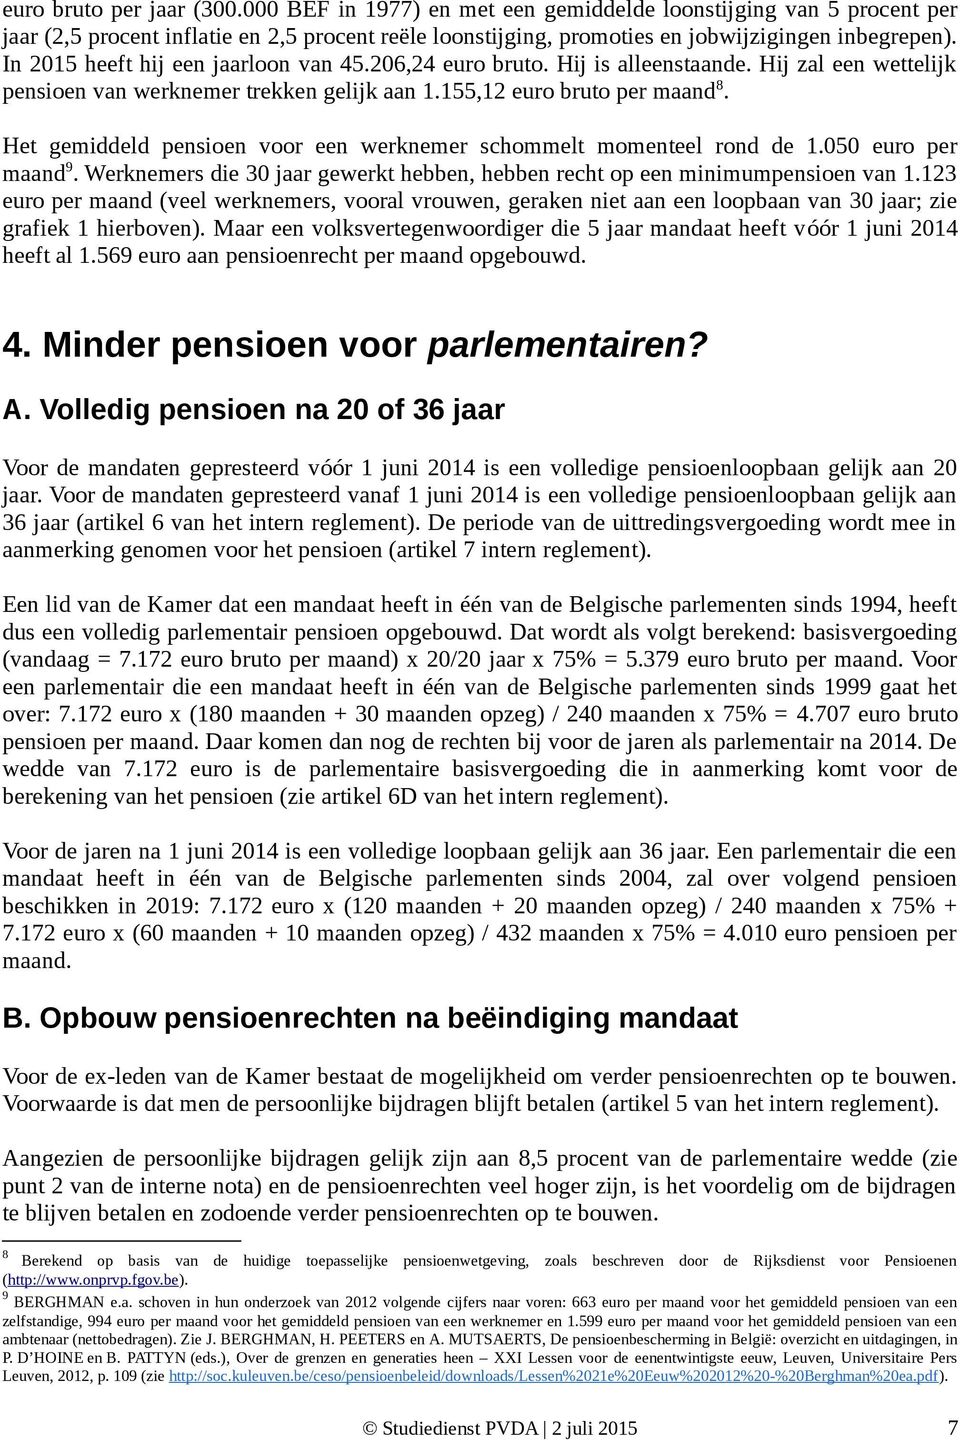 Het gemiddeld pensioen voor een werknemer schommelt momenteel rond de 1.050 euro per maand 9. Werknemers die 30 jaar gewerkt hebben, hebben recht op een minimumpensioen van 1.